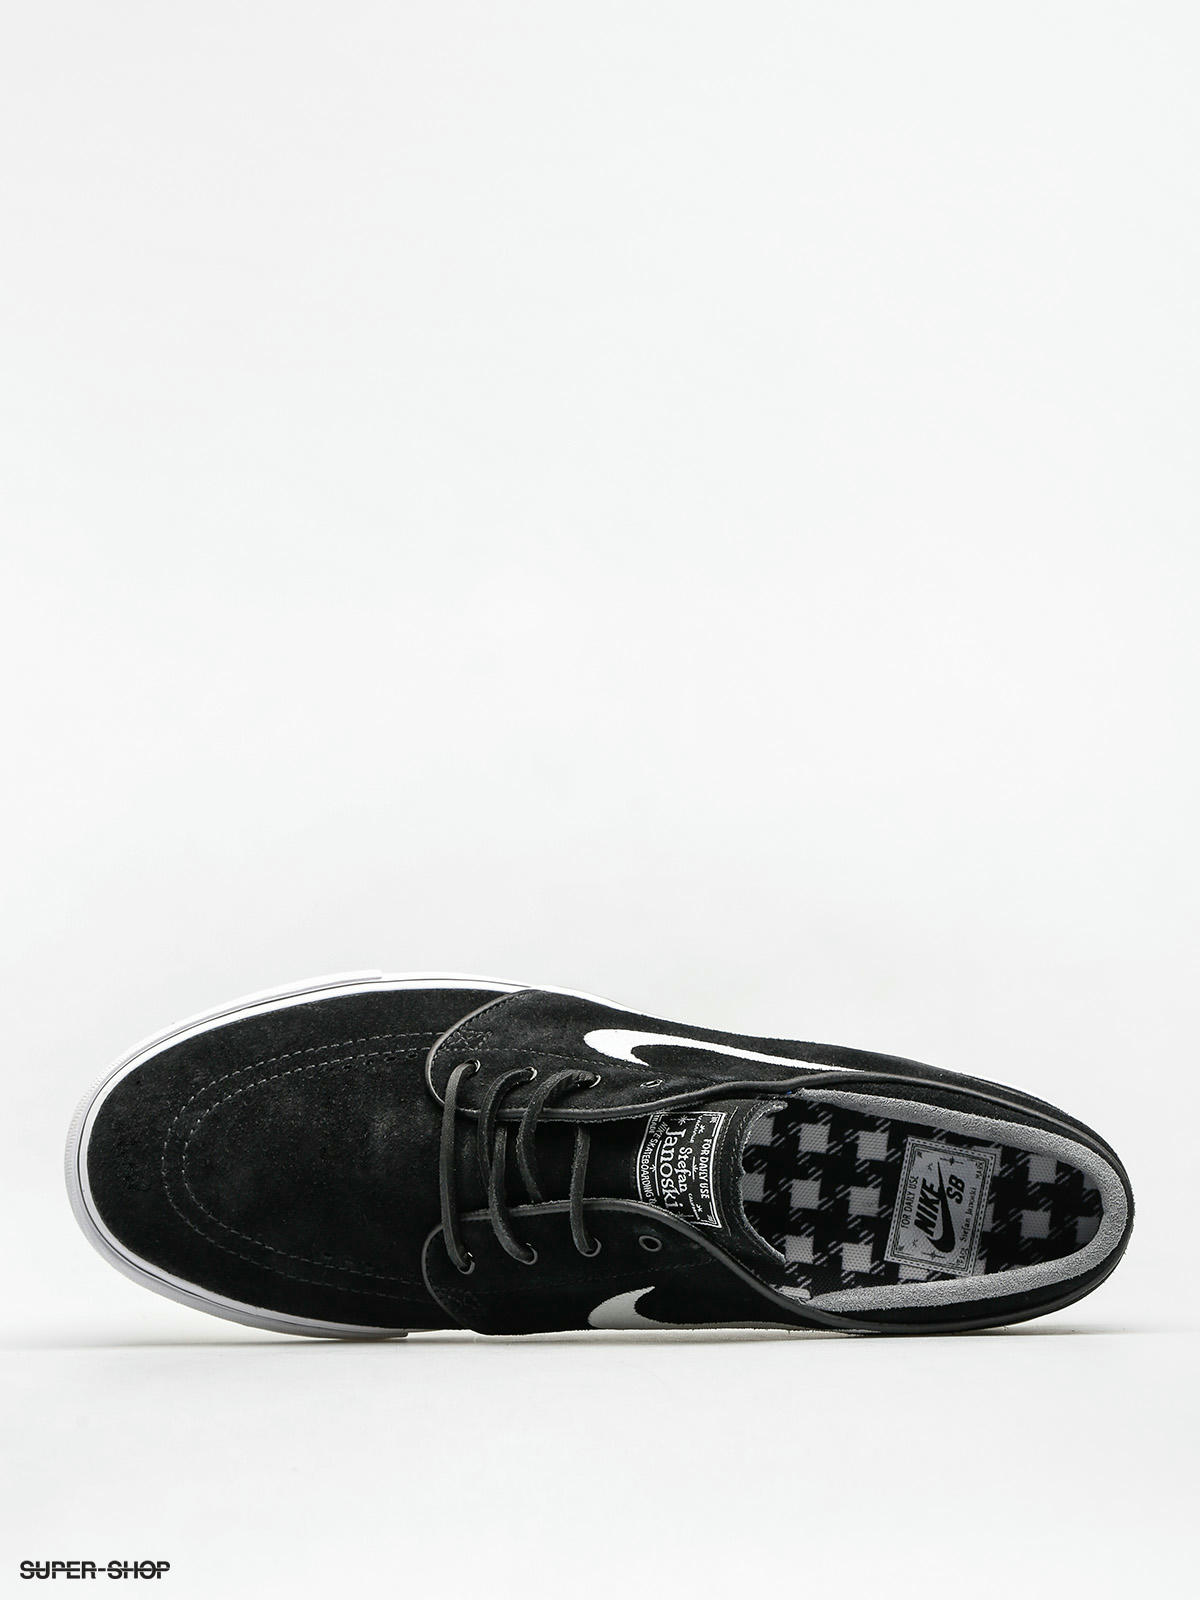 nike sb zoom stefan janoski og black & white skate shoes